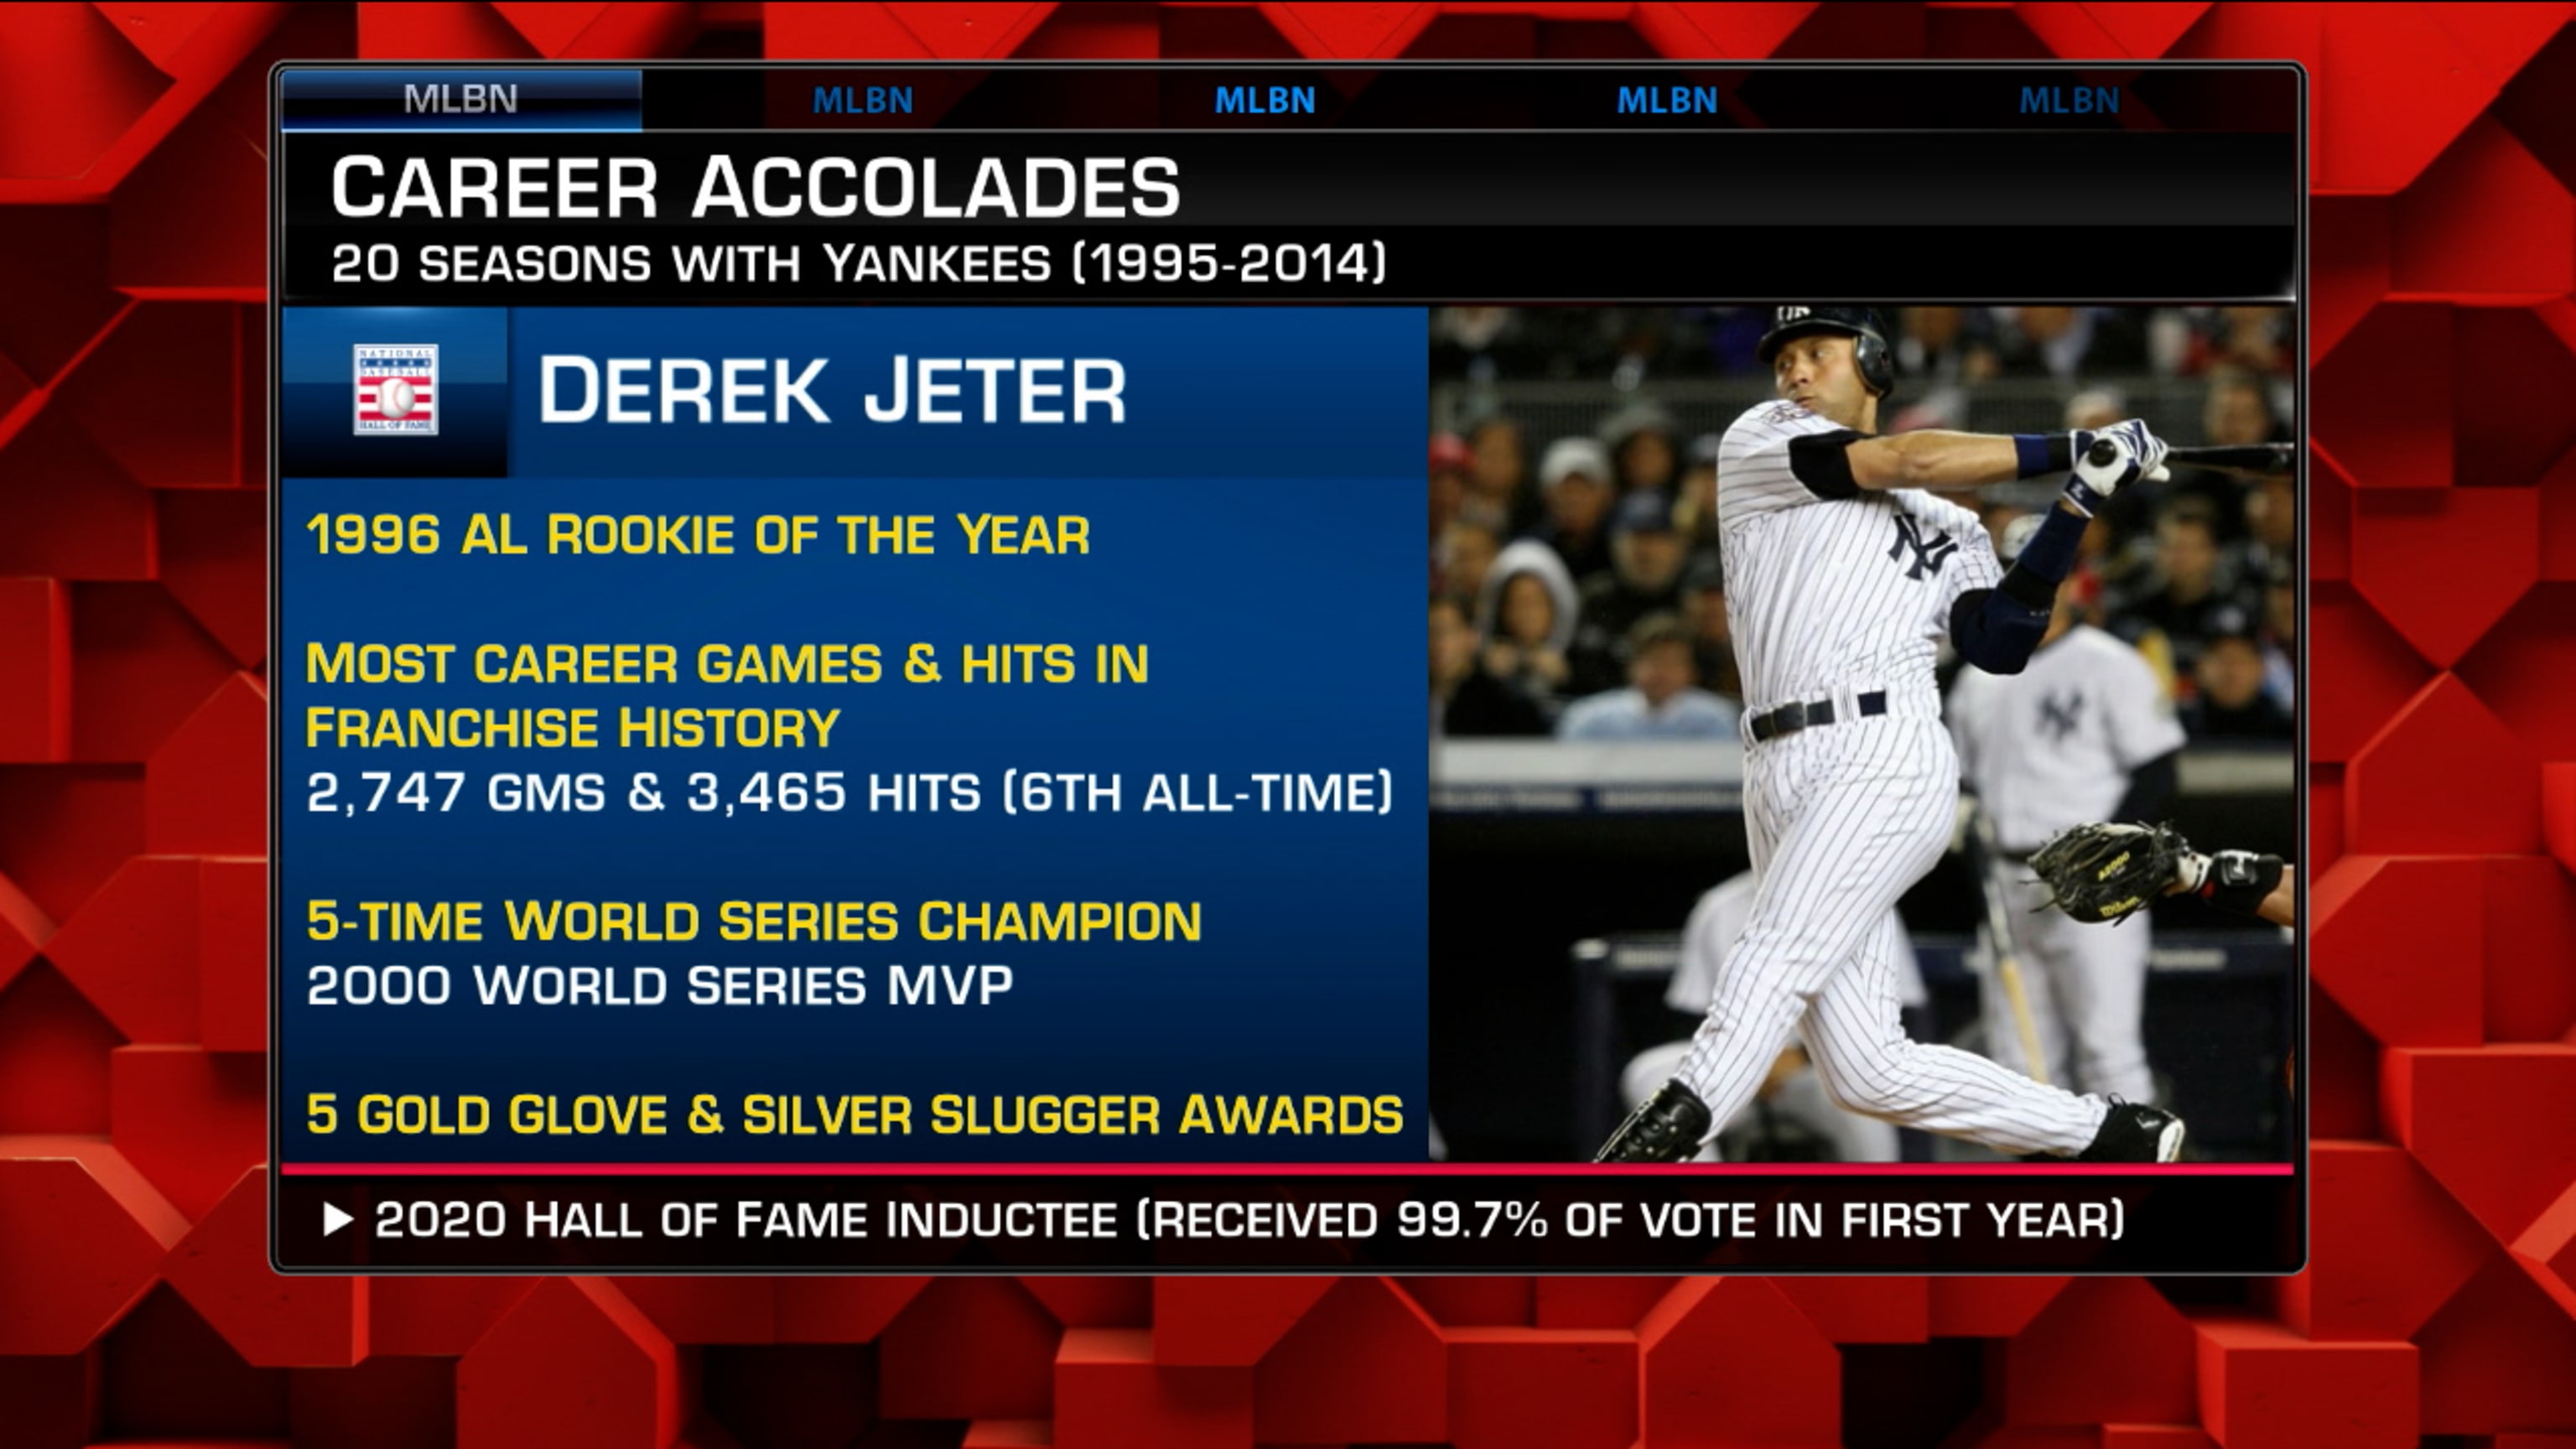 Yankees Videos on X: Derek Jeter's Hall of Fame plaque has been